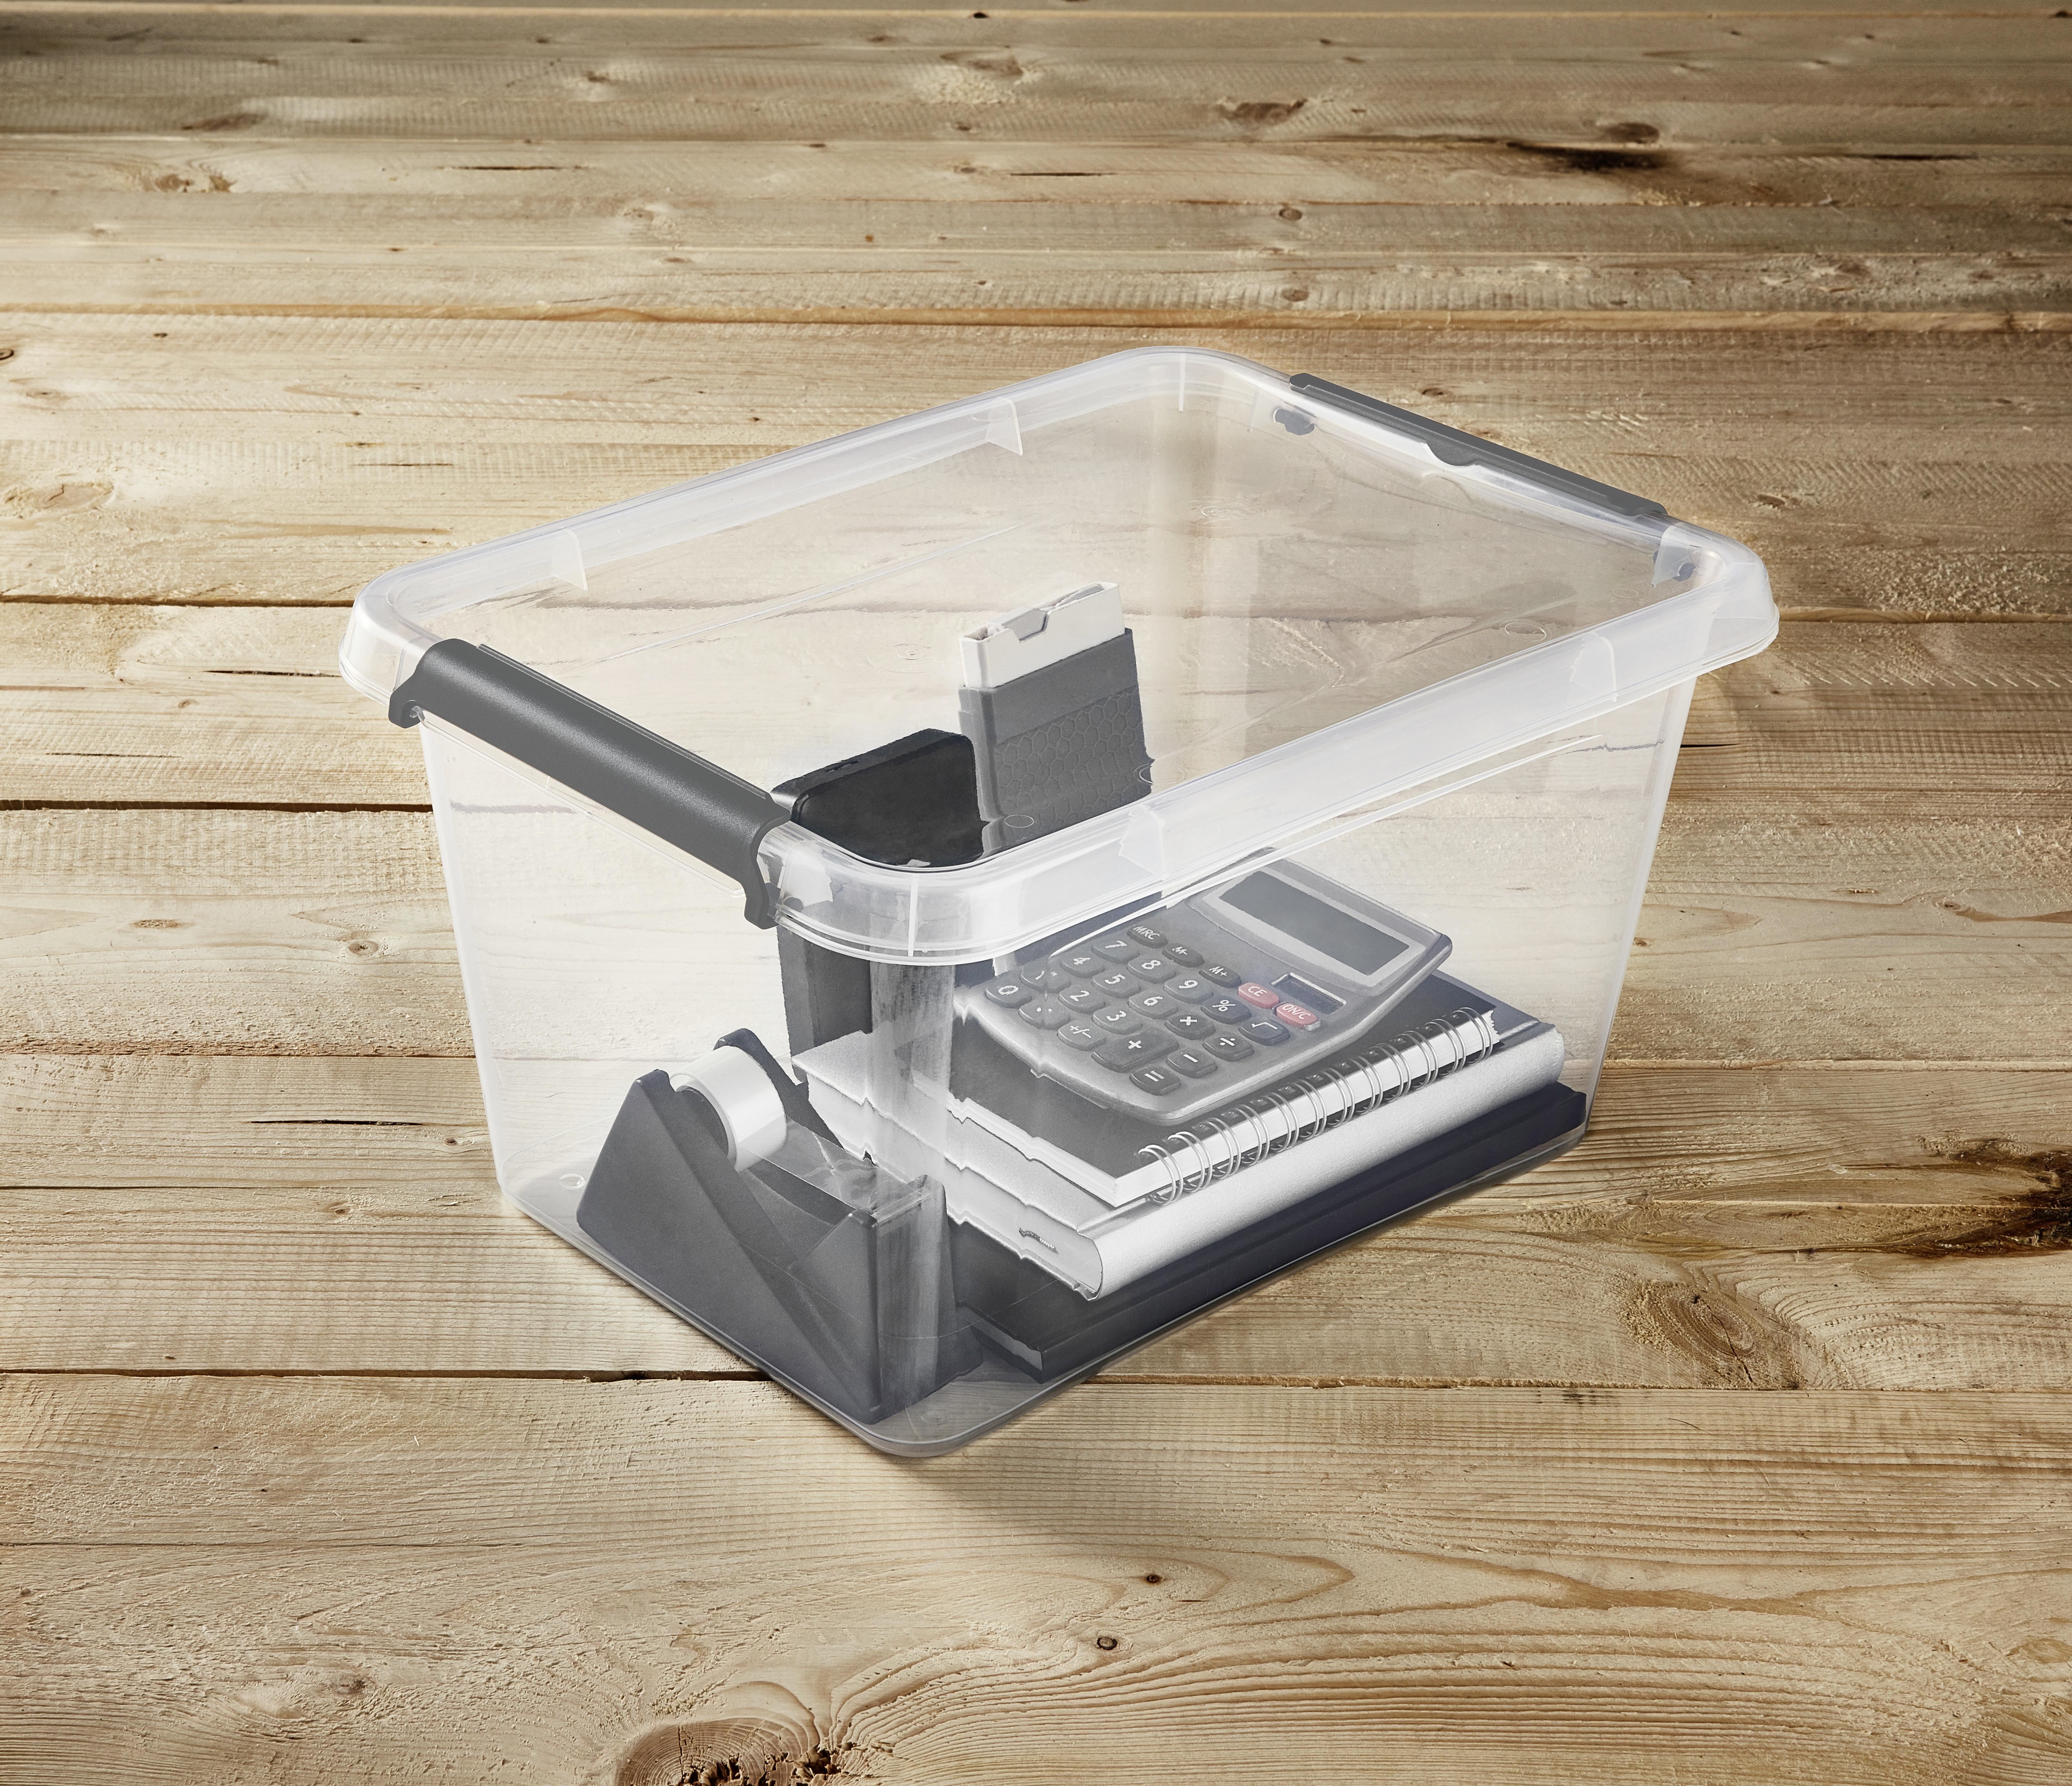 Aufbewahrungsbox Lara Mit Deckel Kunststoff 39x29x21 cm - Transparent, Basics, Kunststoff (39/29/21cm) - Homezone